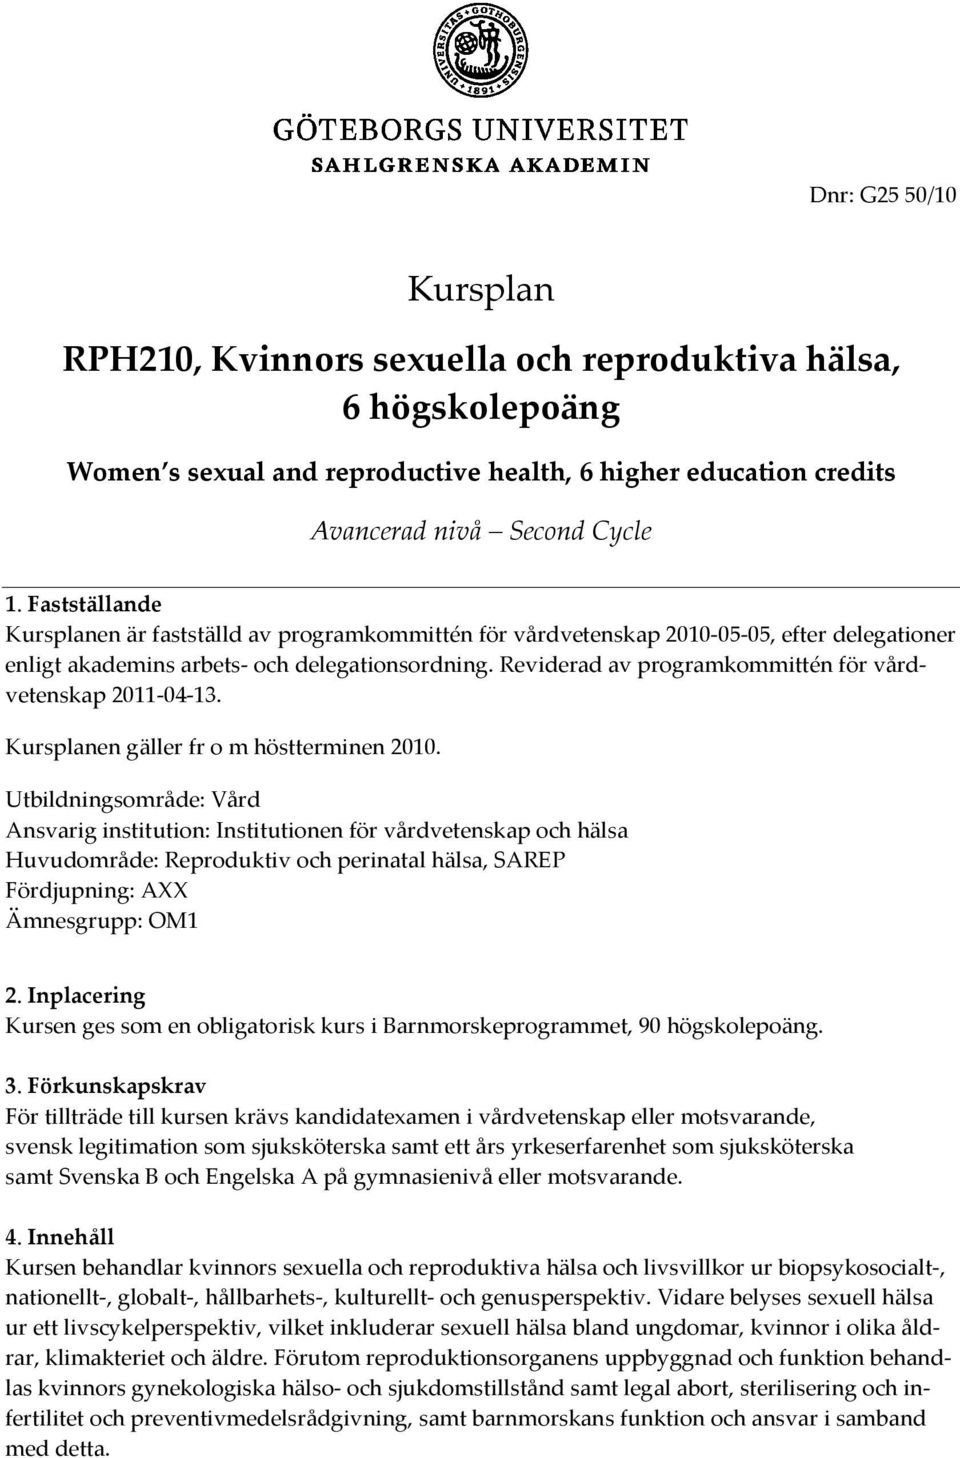 Reviderad av programkommittén för vårdvetenskap 2011-04-13. Kursplanen gäller fr o m höstterminen 2010.